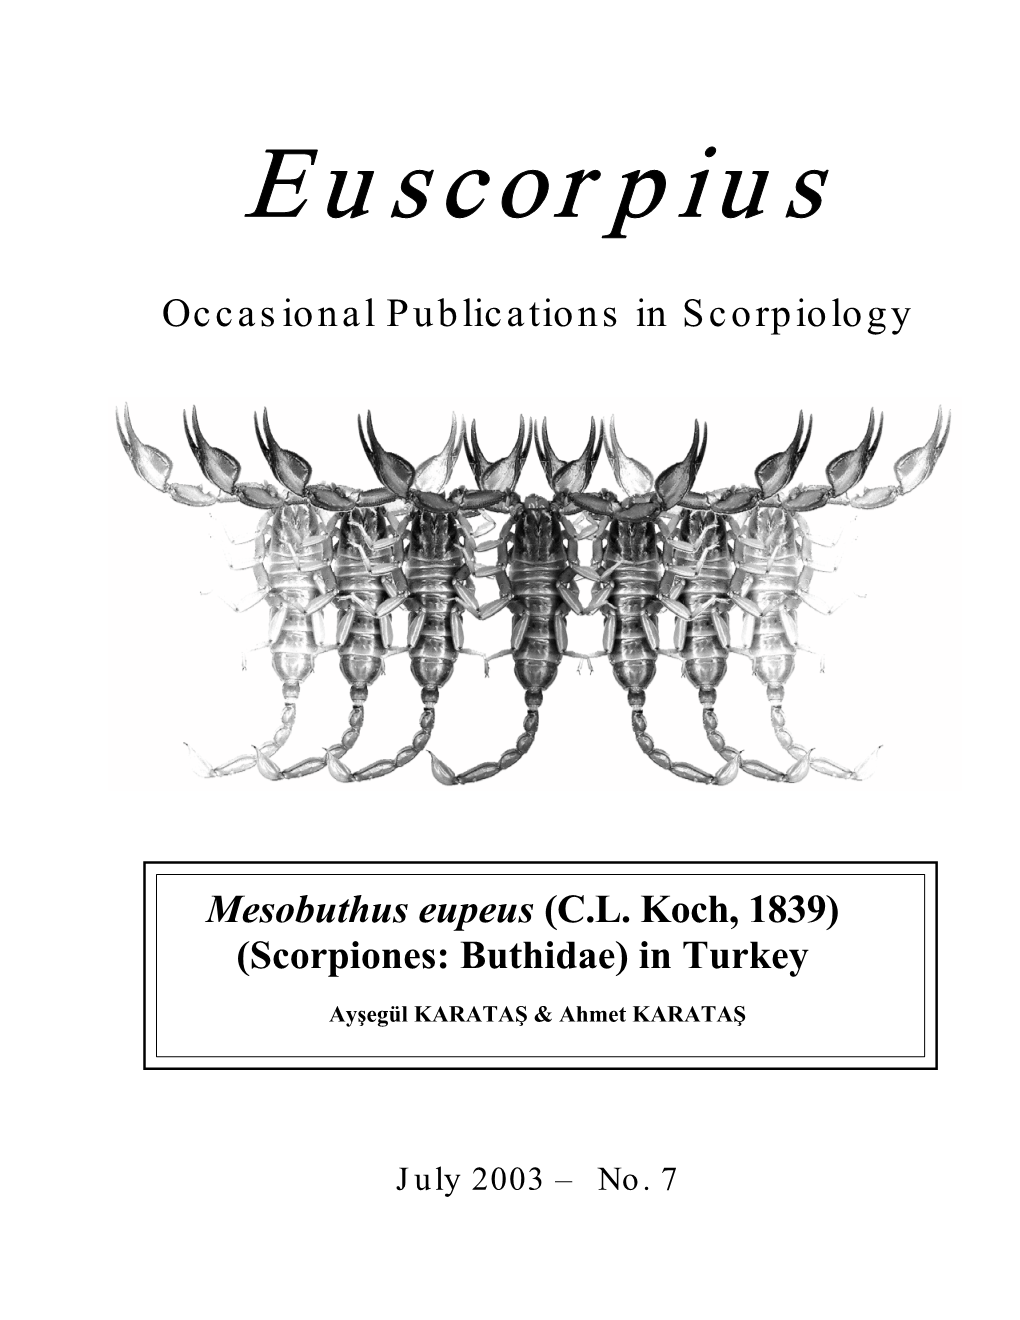 Mesobuthus Eupeus (C.L